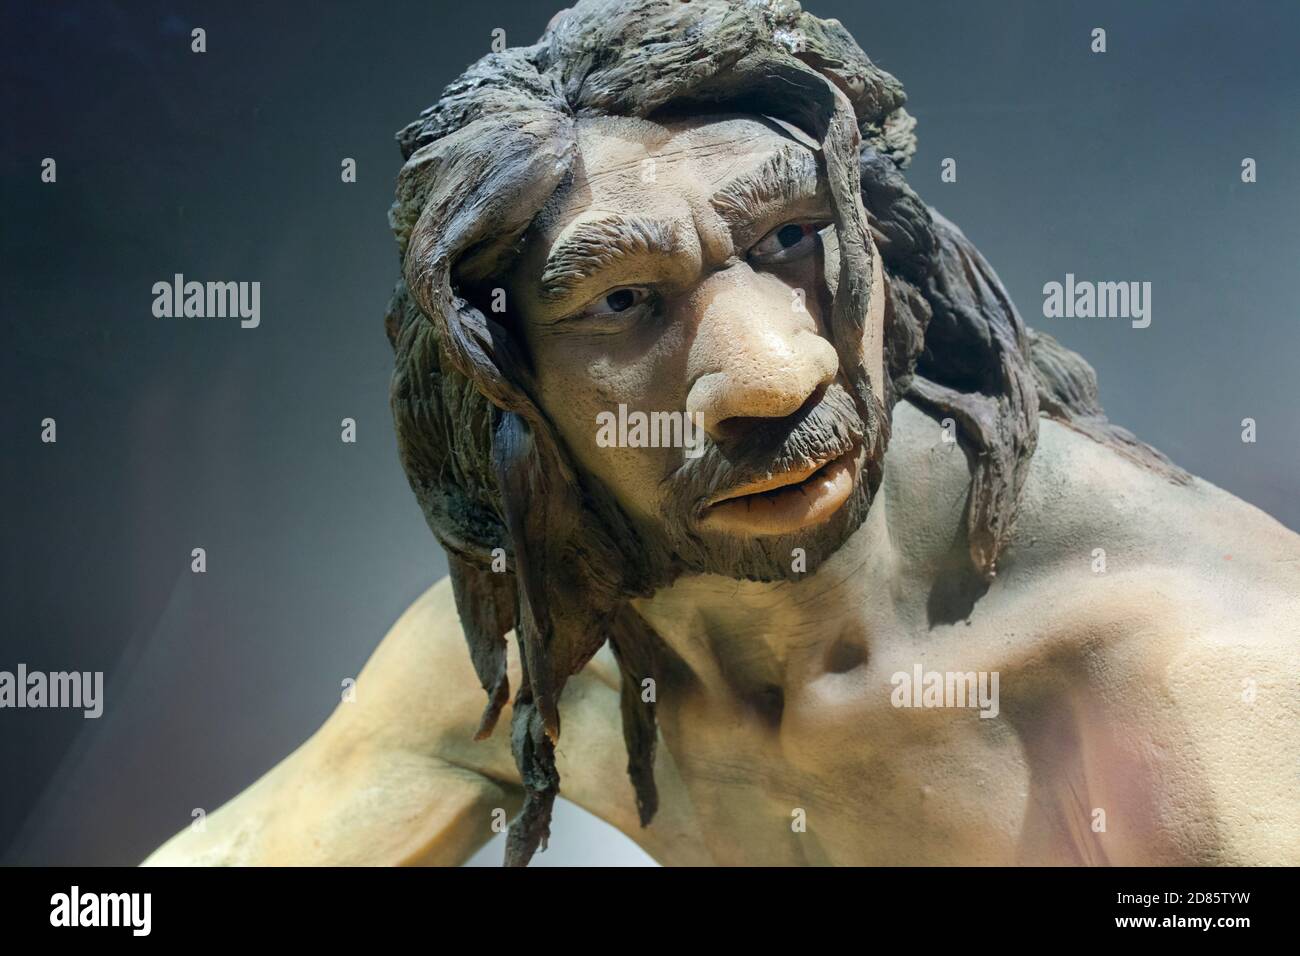 Sculpture grandeur nature de Homo heidelbergensis. Musée archéologique régional de Madrid. Gros plan sur le visage. Alcala de Henares, Espagne Banque D'Images